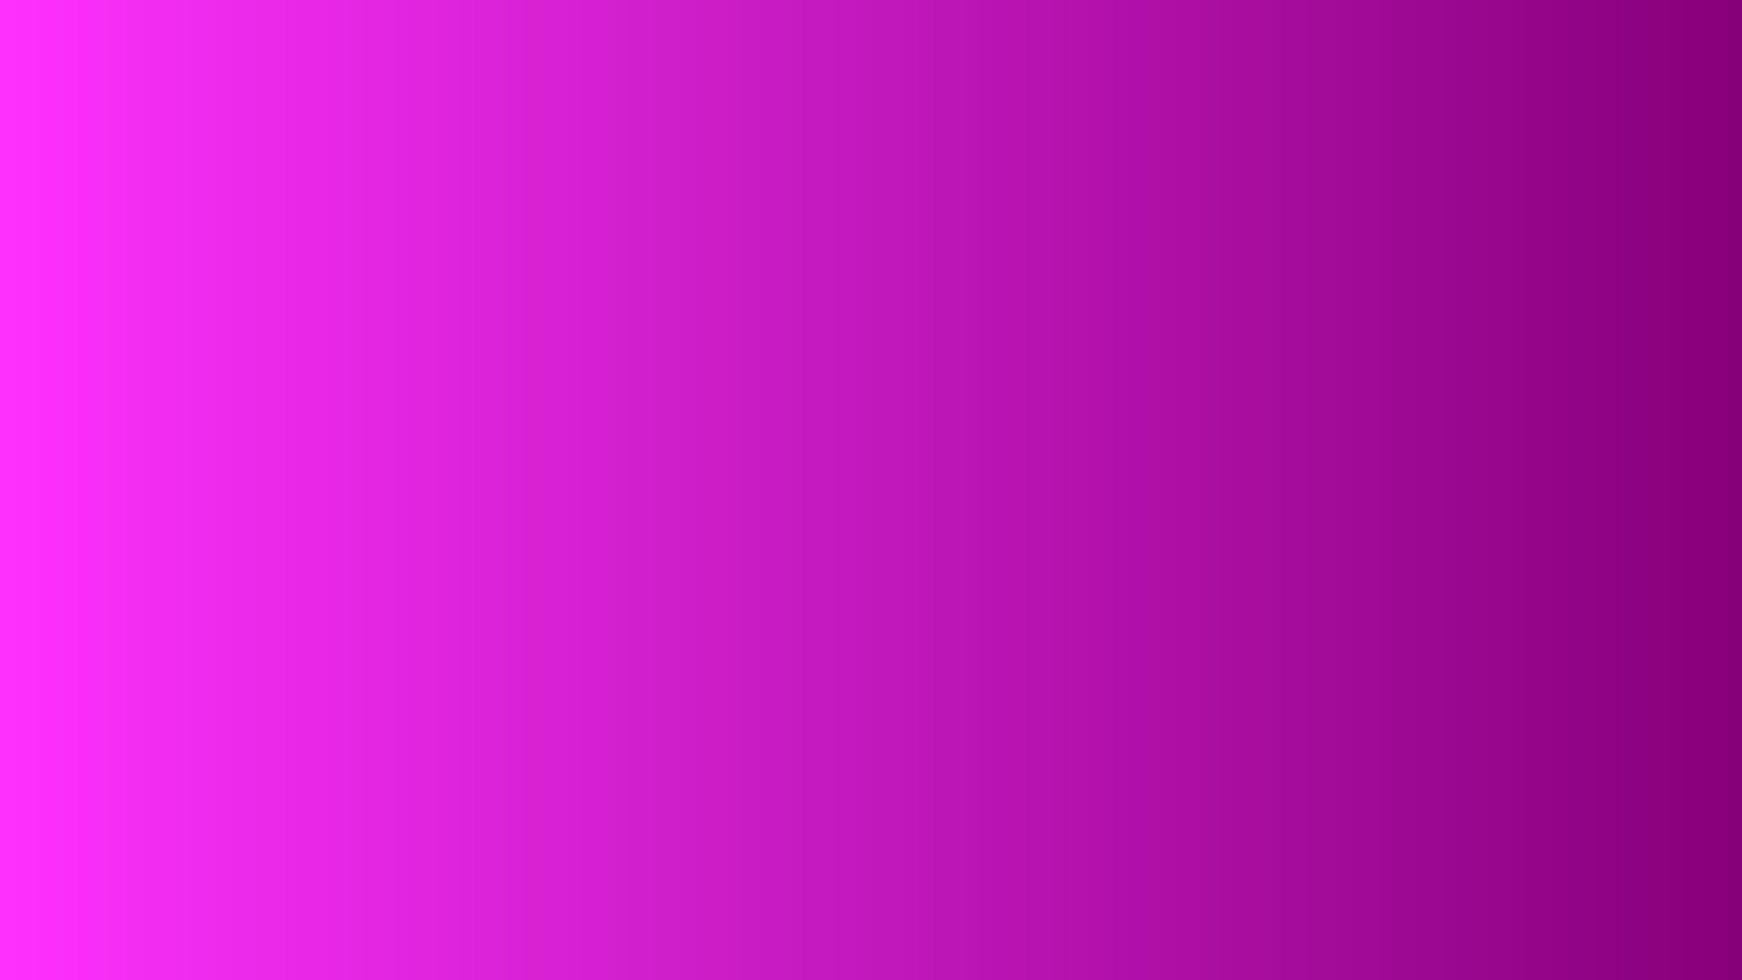 abstracte achtergrond met kleurovergang roze perfect voor ontwerp, behang, promotie, presentatie, website, banner enz. afbeelding achtergrond vector